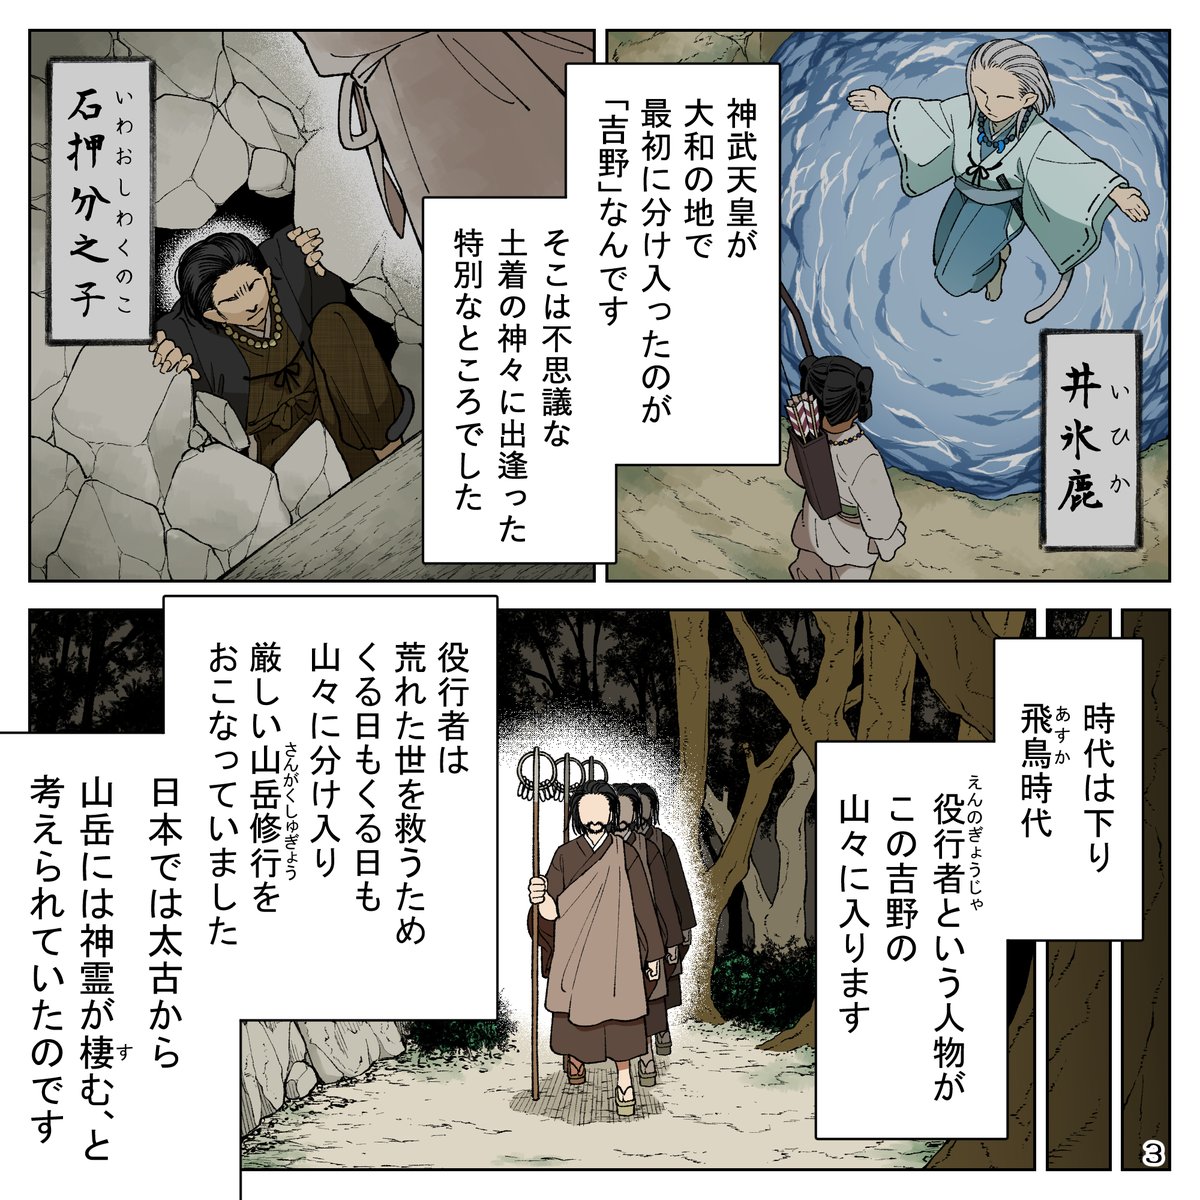 『神話の地・奈良へ』(1/2)
#漫画でみる奈良の歴史  プロジェクトにて吉野山や金峯山寺についてのPR漫画を描かせていただきました!どうぞよろしくお願いいたします(*^∇^*)
https://t.co/NvZmXmtltf 